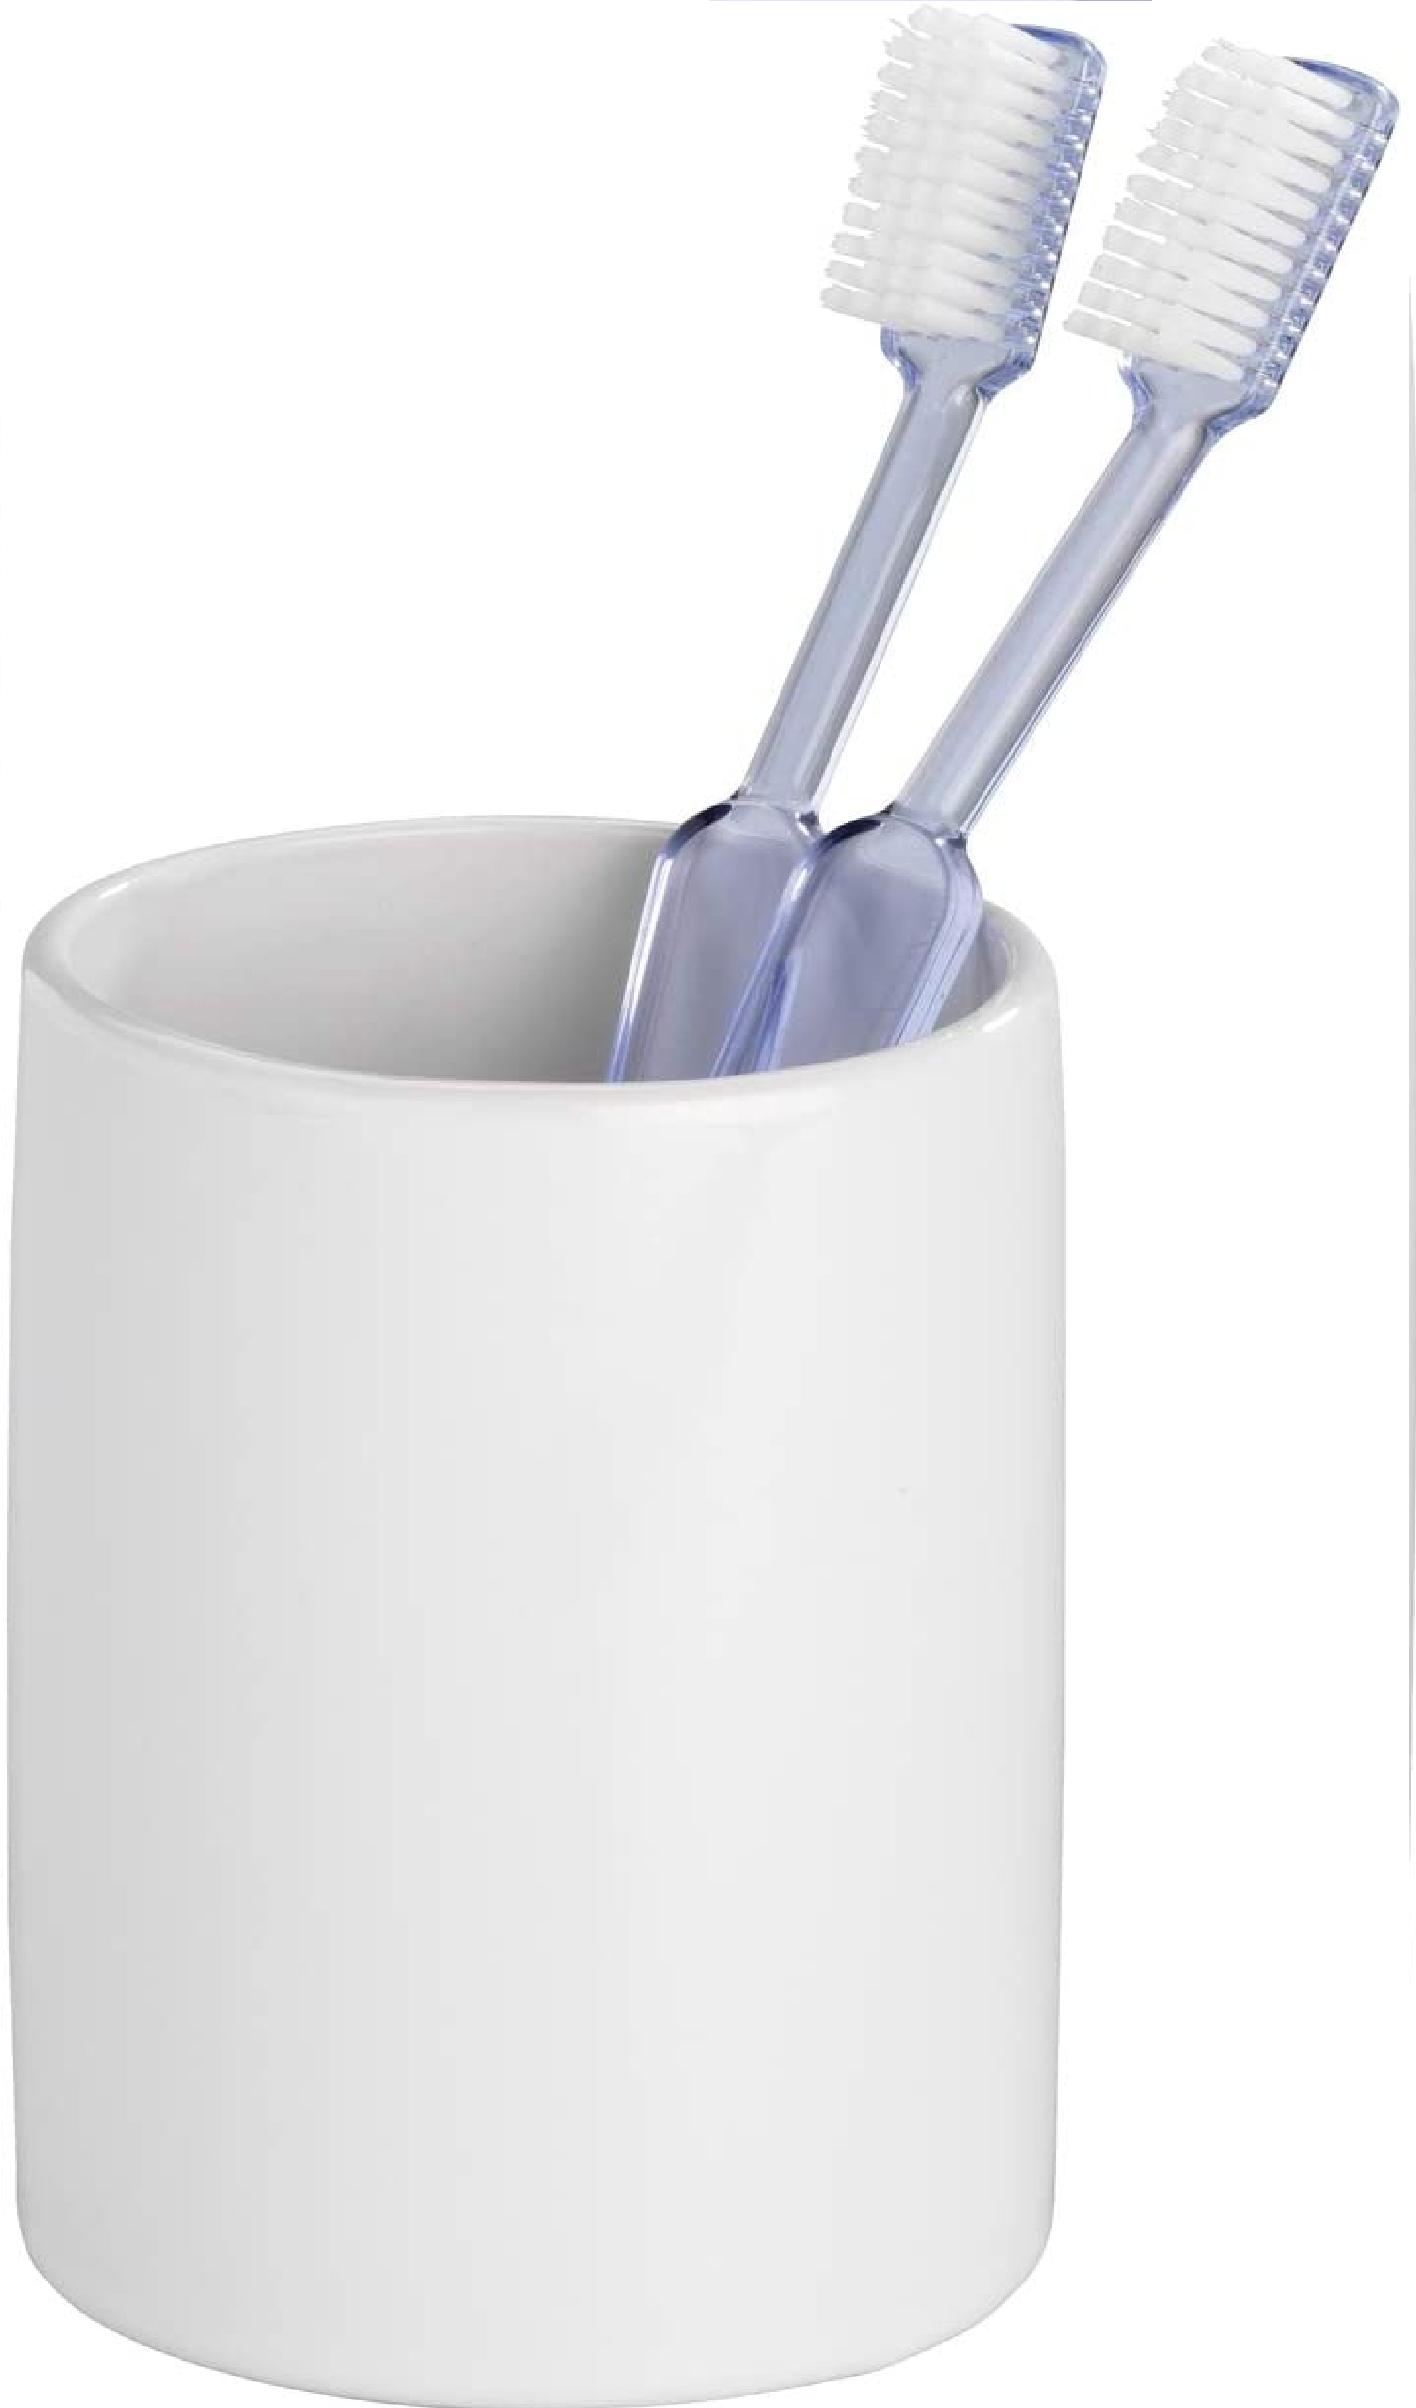 Zahnputzbecher Polaris, hochwertiger Zahnbürstenhalter für Zahnbürste und Zahnpasta aus edler Keramik, Ø 7,5 x 11,2 cm, Weiß